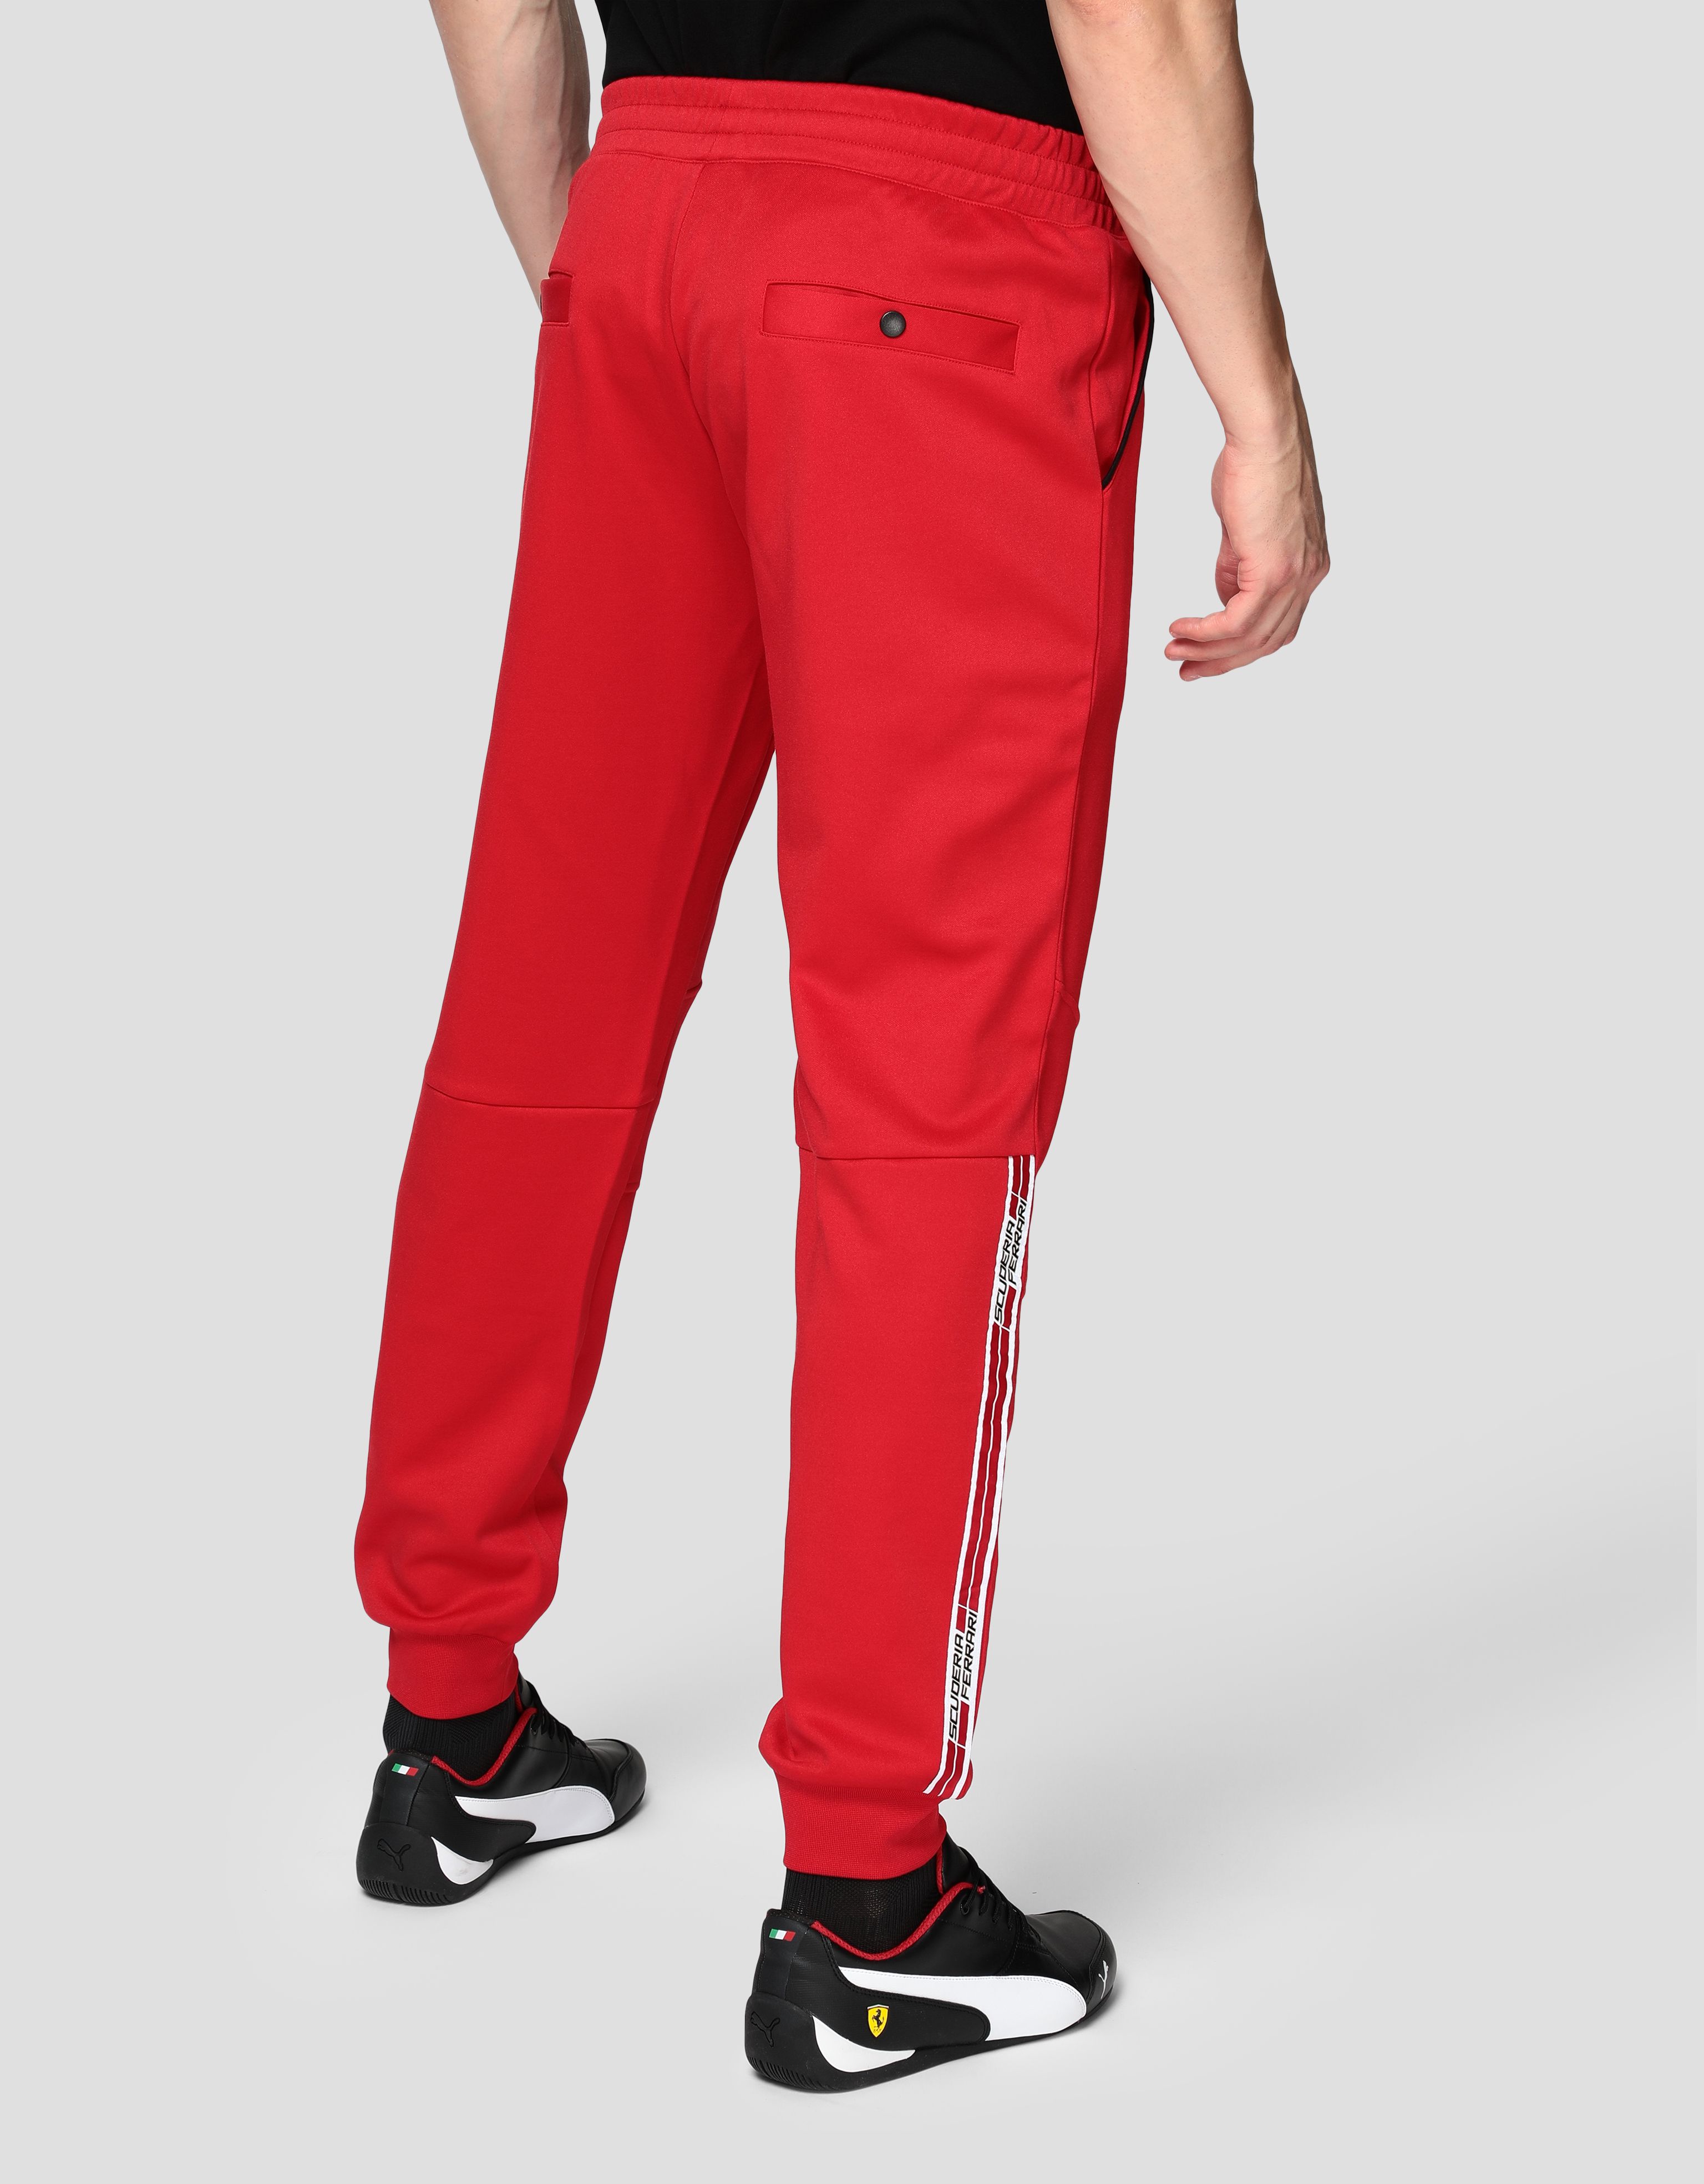 Ferrari Men’s jogging trousers in triacetate Man | Scuderia Ferrari ...